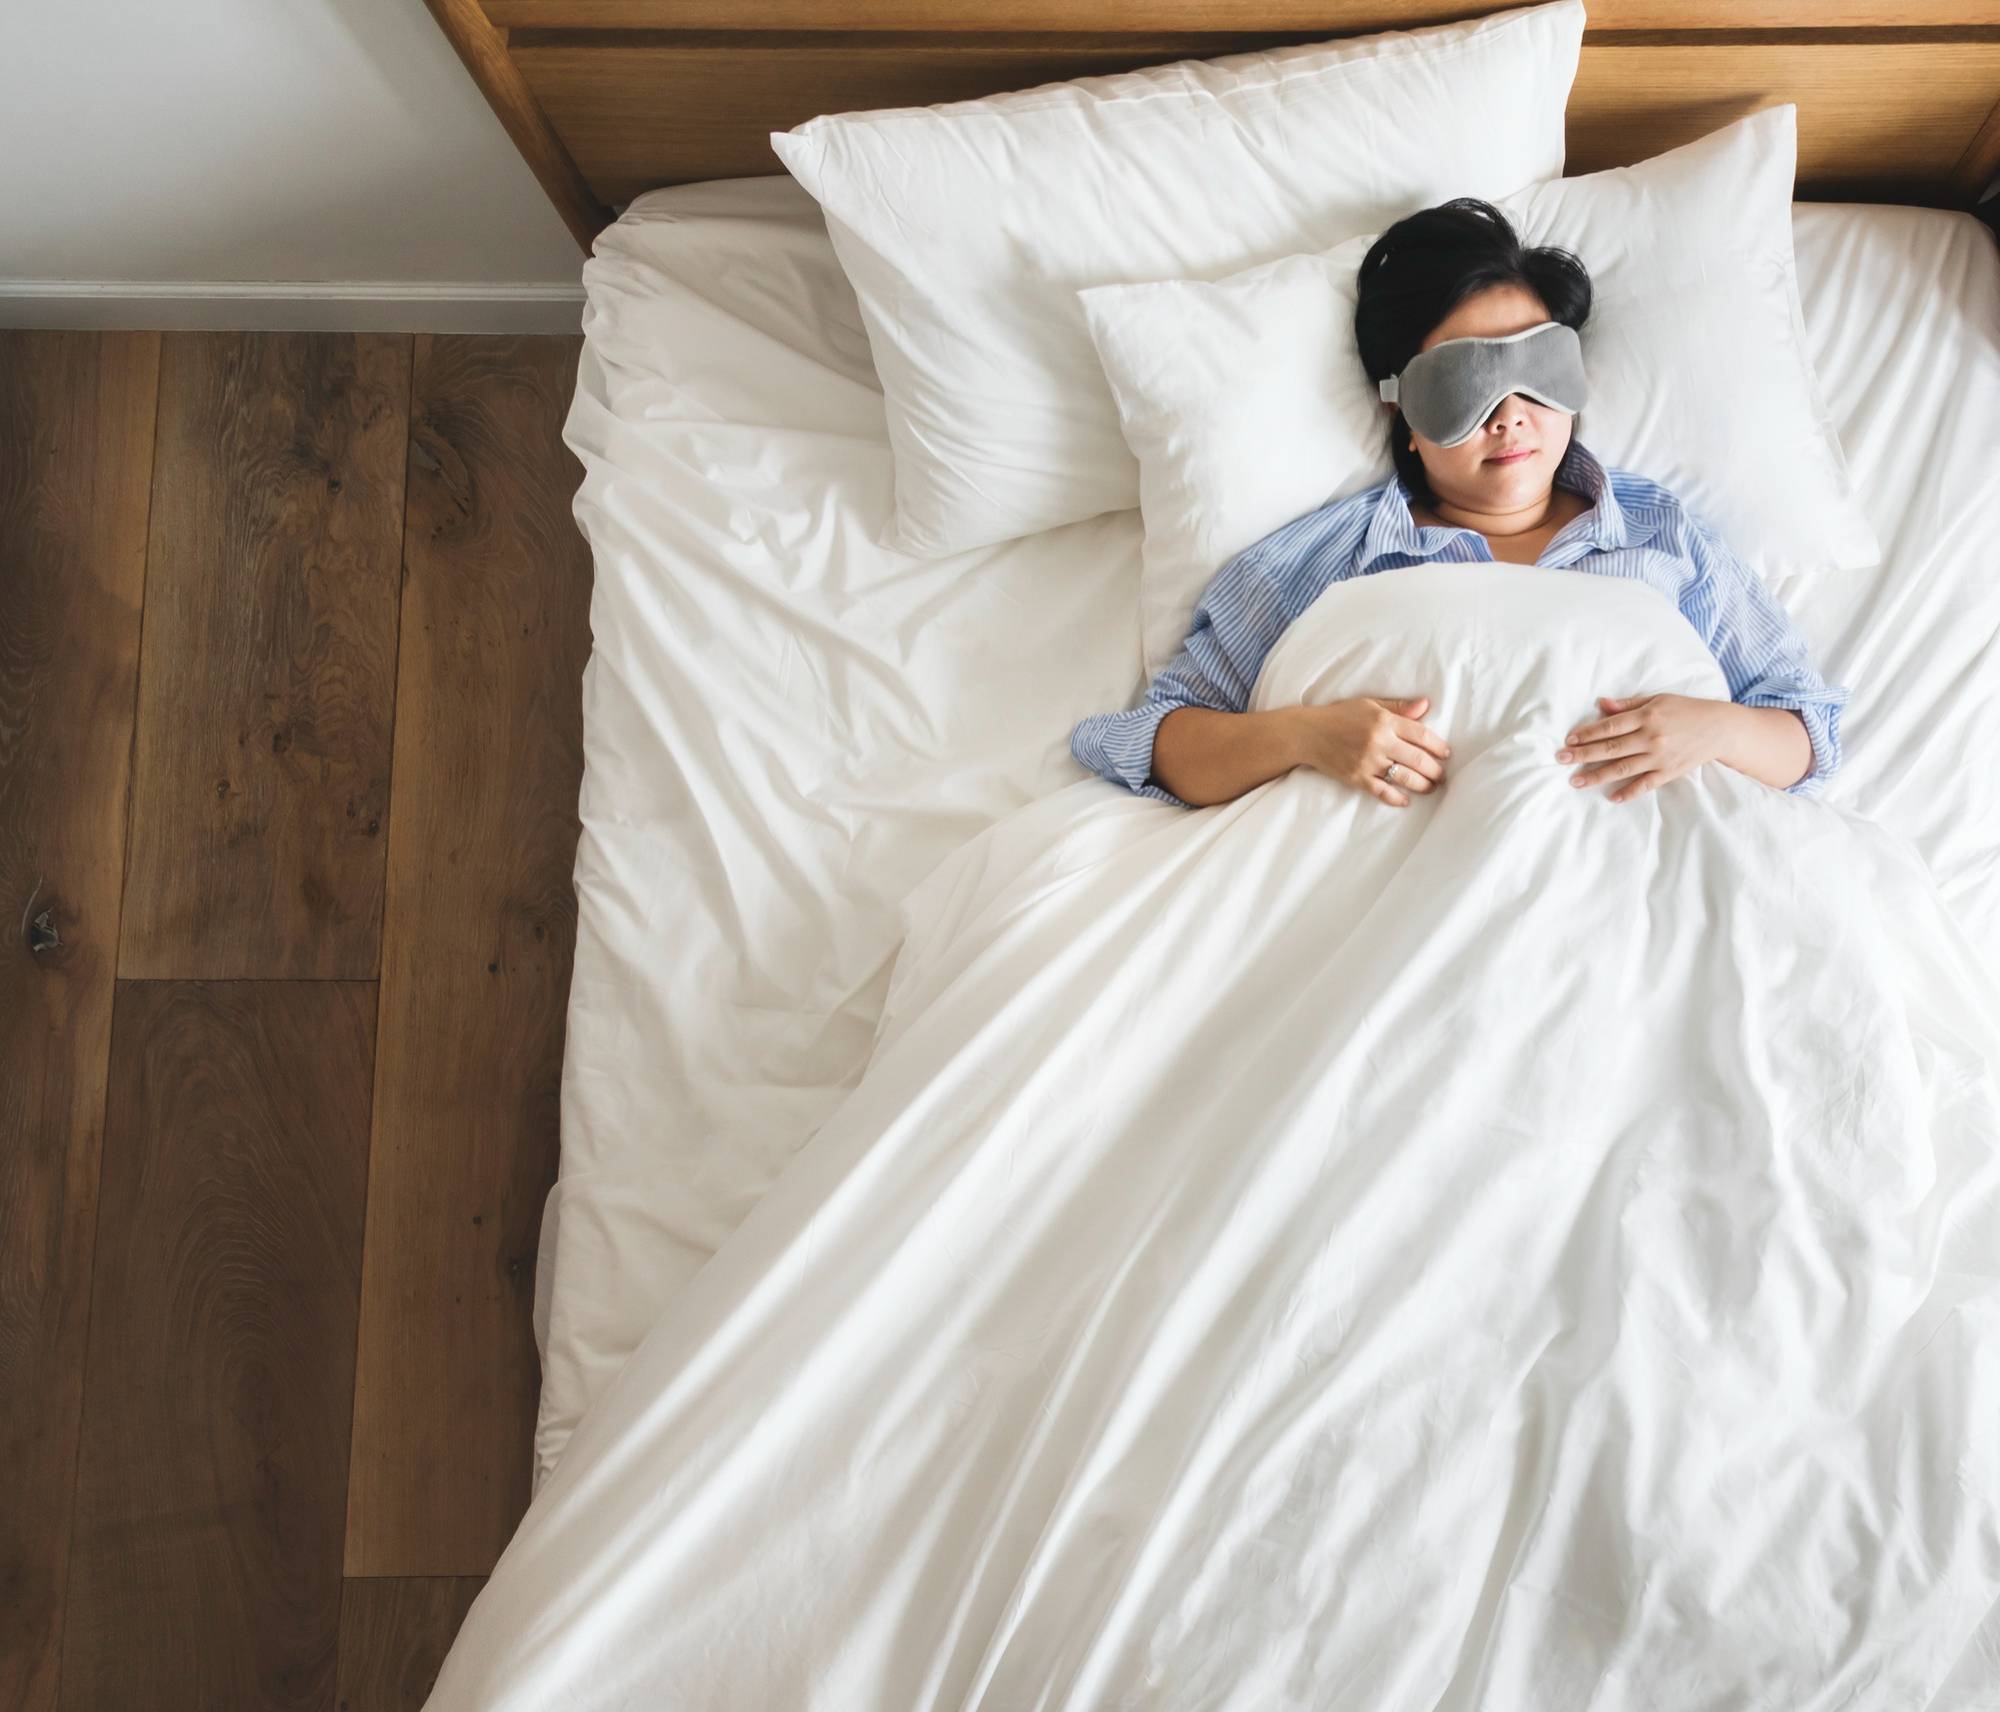 Sering Disebut Ketindihan, Berikut 12 Fakta Sleep Paralysis